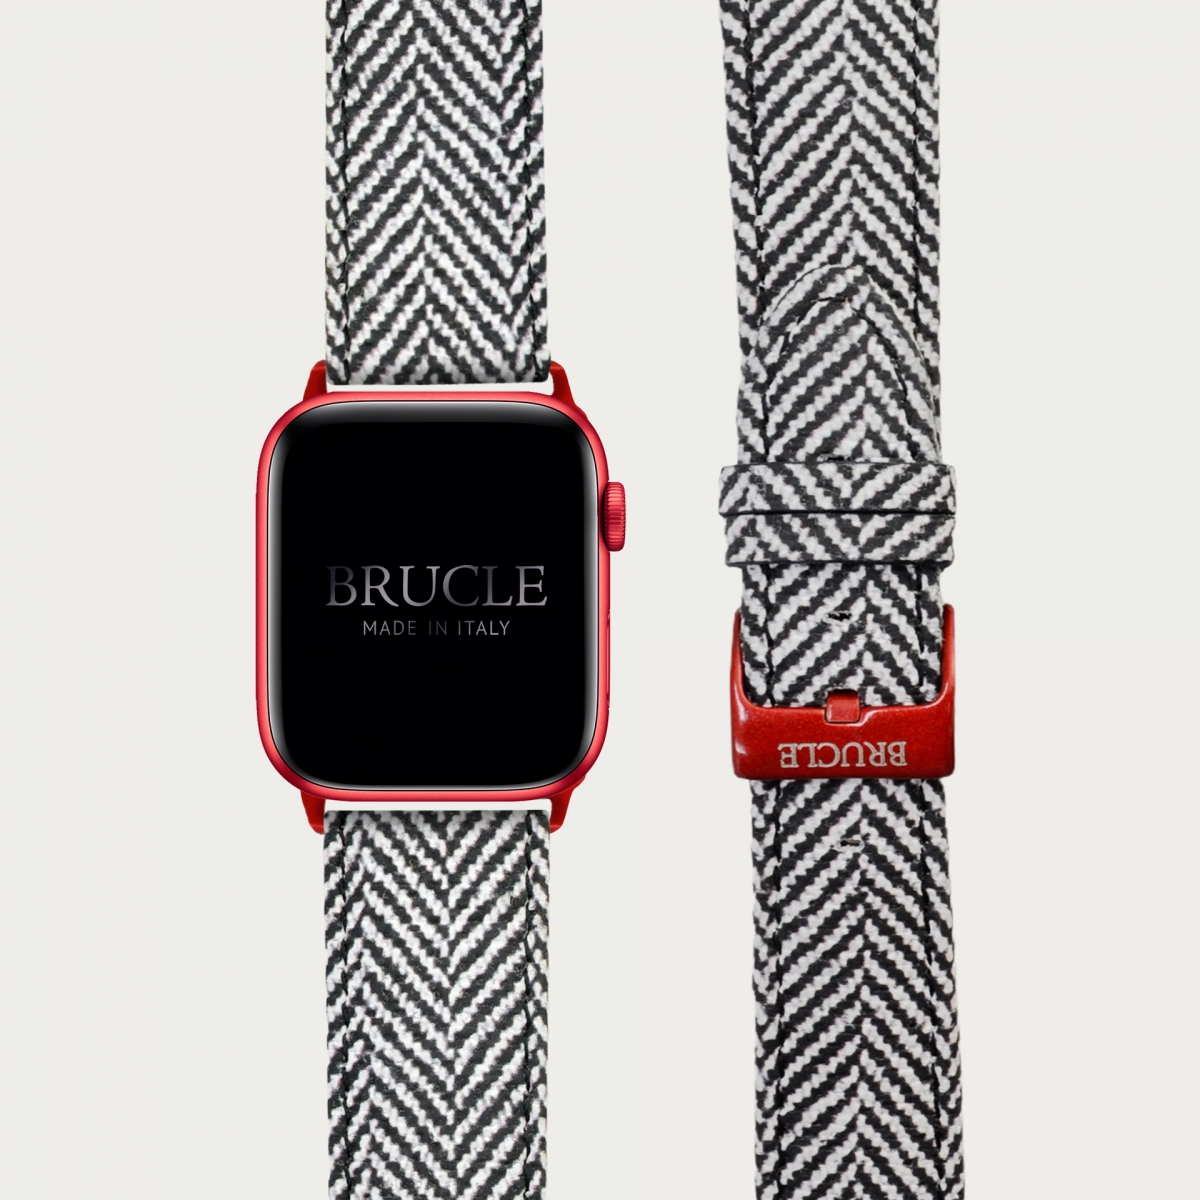 BRUCLE Correa de reloj compatible con Apple Watch / Samsung smartwatch, estampado tartan